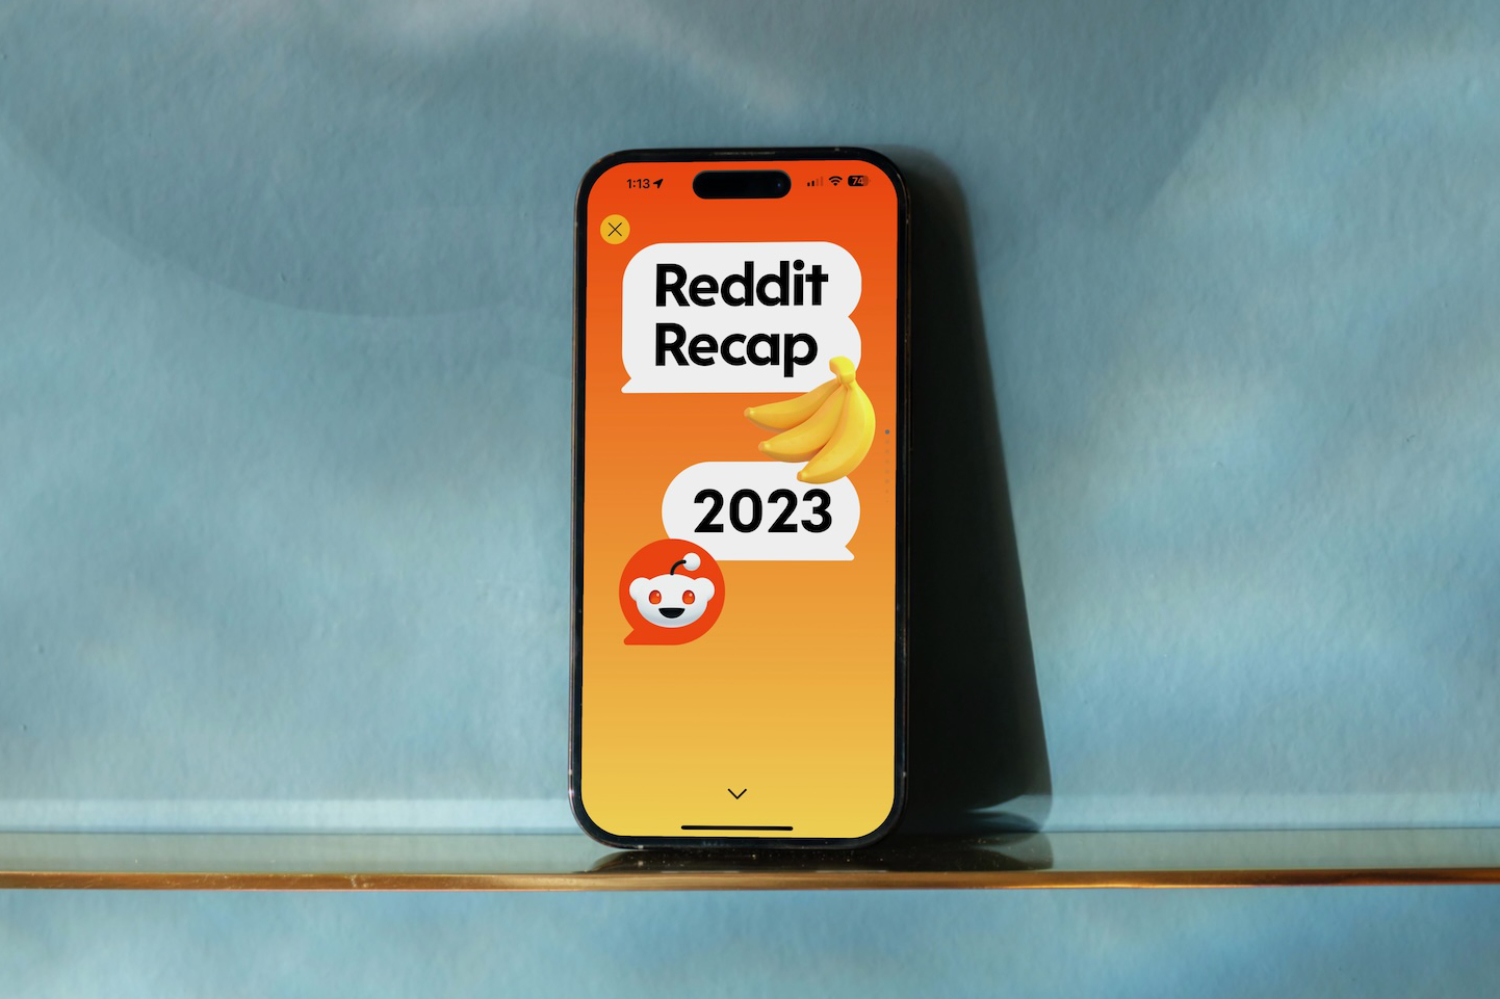 Reddit Recap 2023: how to find yours now